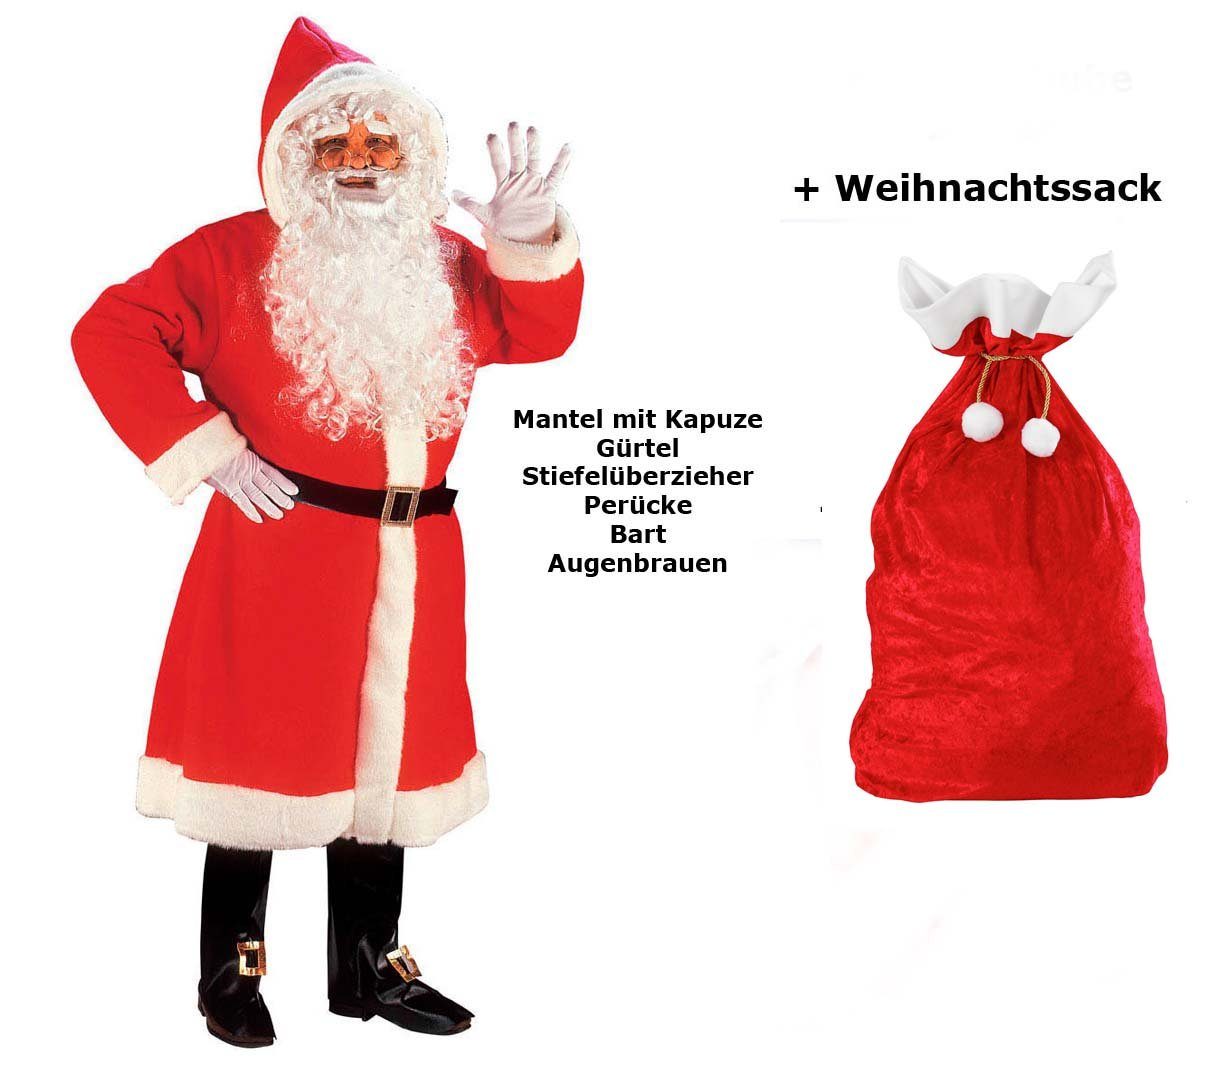 Scherzwelt Weihnachtsmann Luxus Weihnachtmann Mantel mit Perücke, Bart, ...M/L - Set mit Sack, Weihnachtsmannkostüm, Weihnachtskostüm, Weihnachtsmann